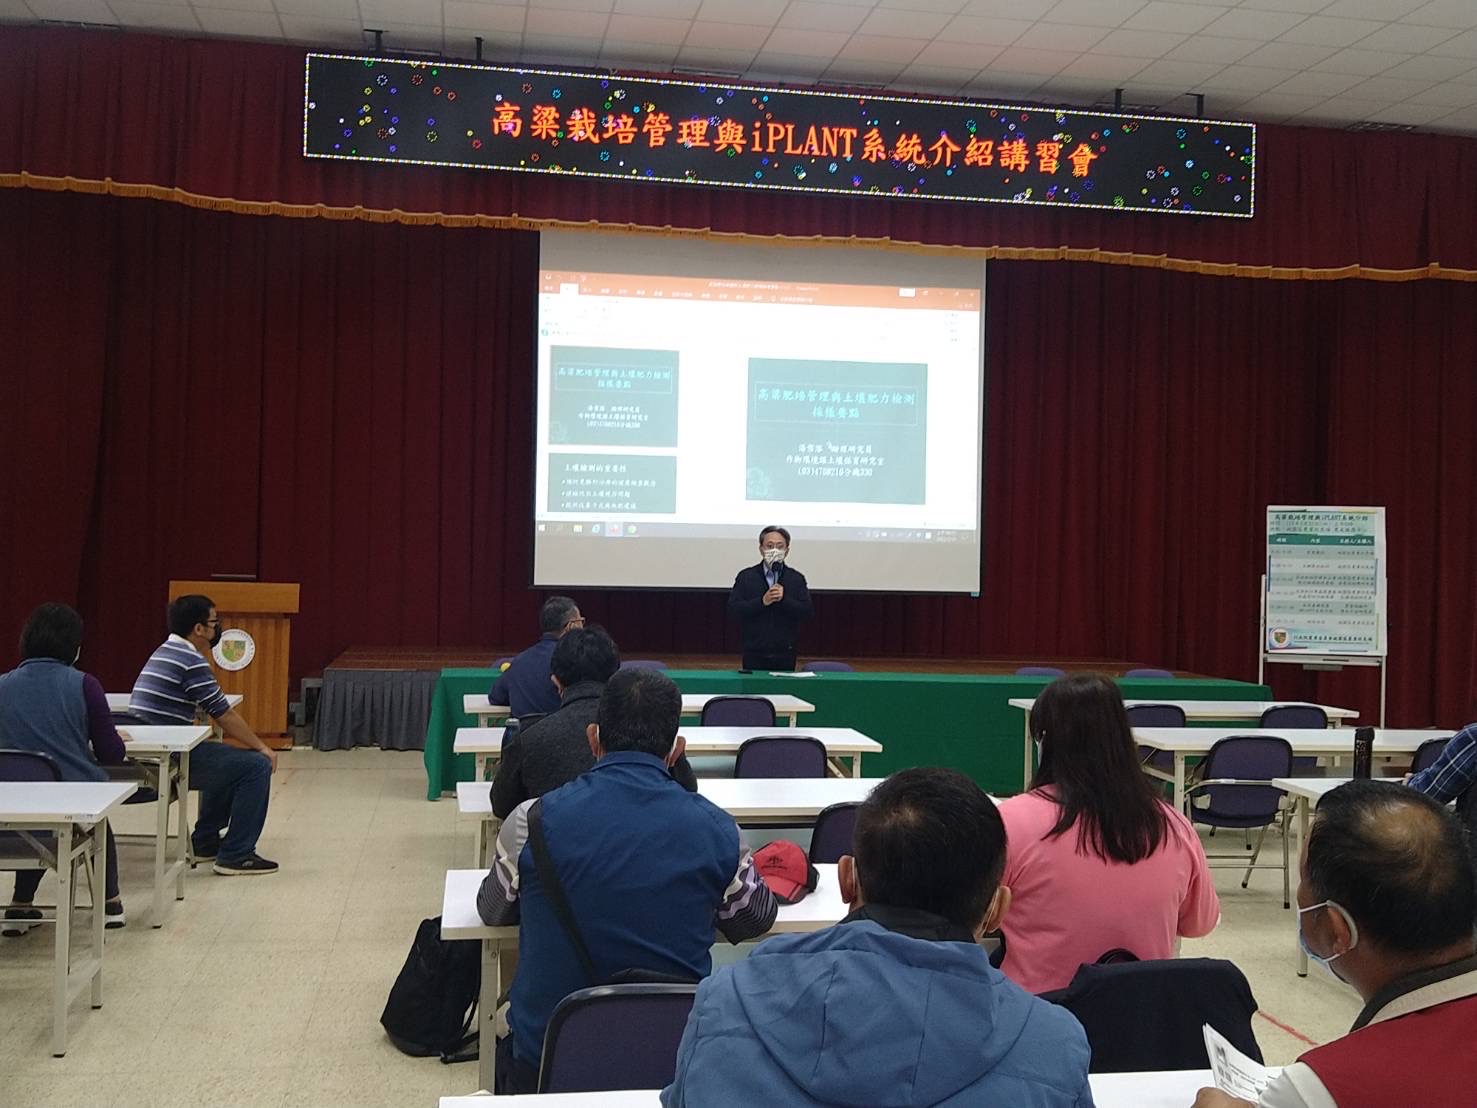 郭坤峯場長主持高粱栽培管理與iPLANT系統介紹講習會。